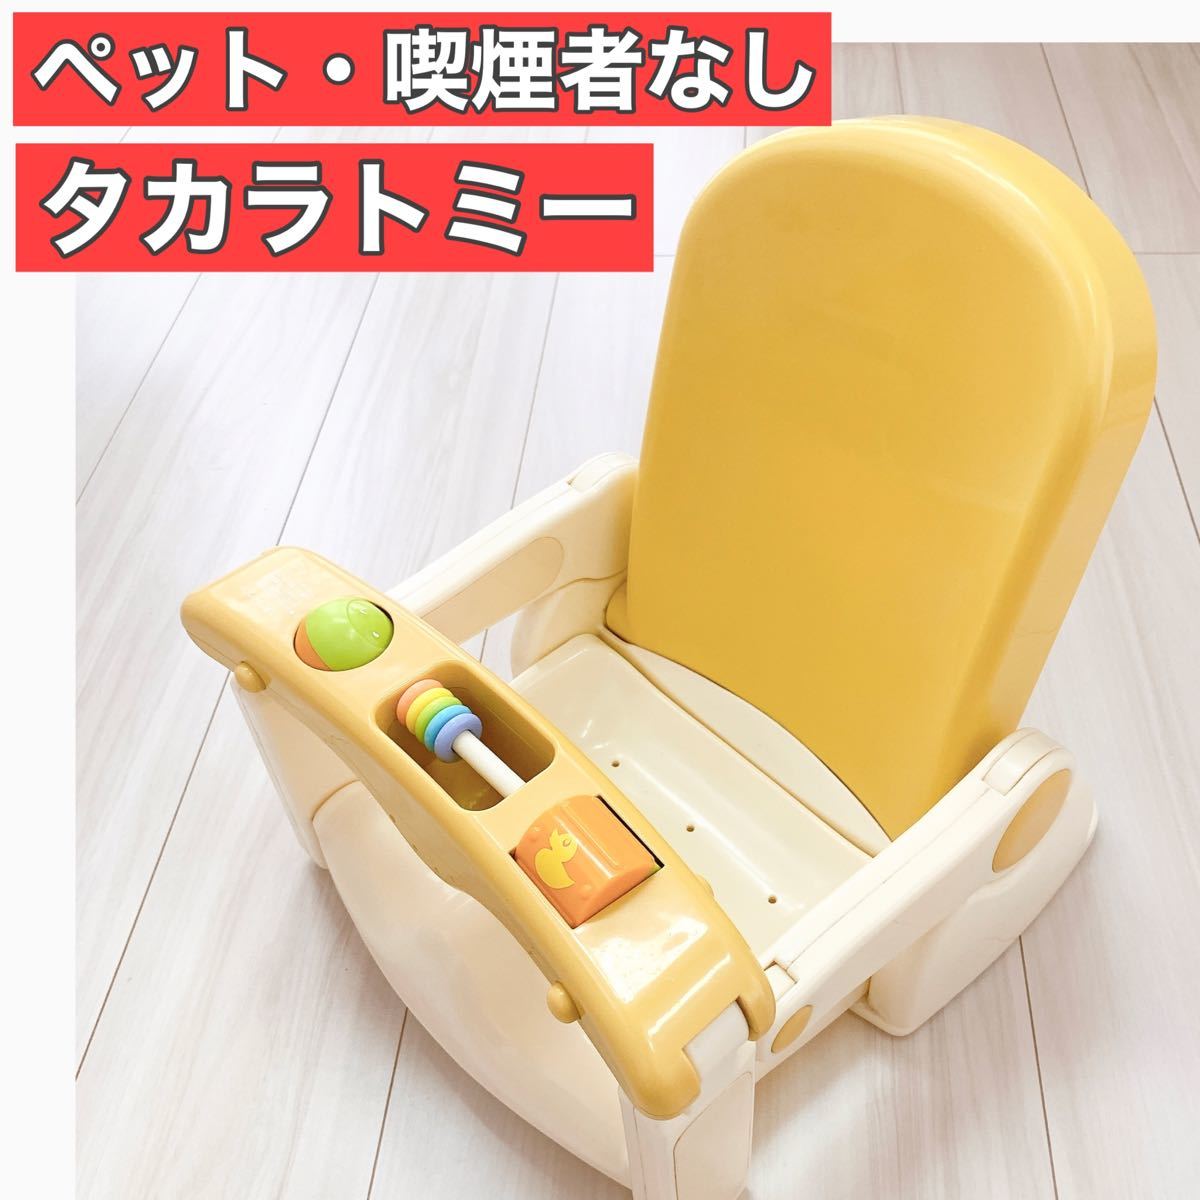 畳めるバスチェア TAKARA TOMY タカラトミー お風呂椅子